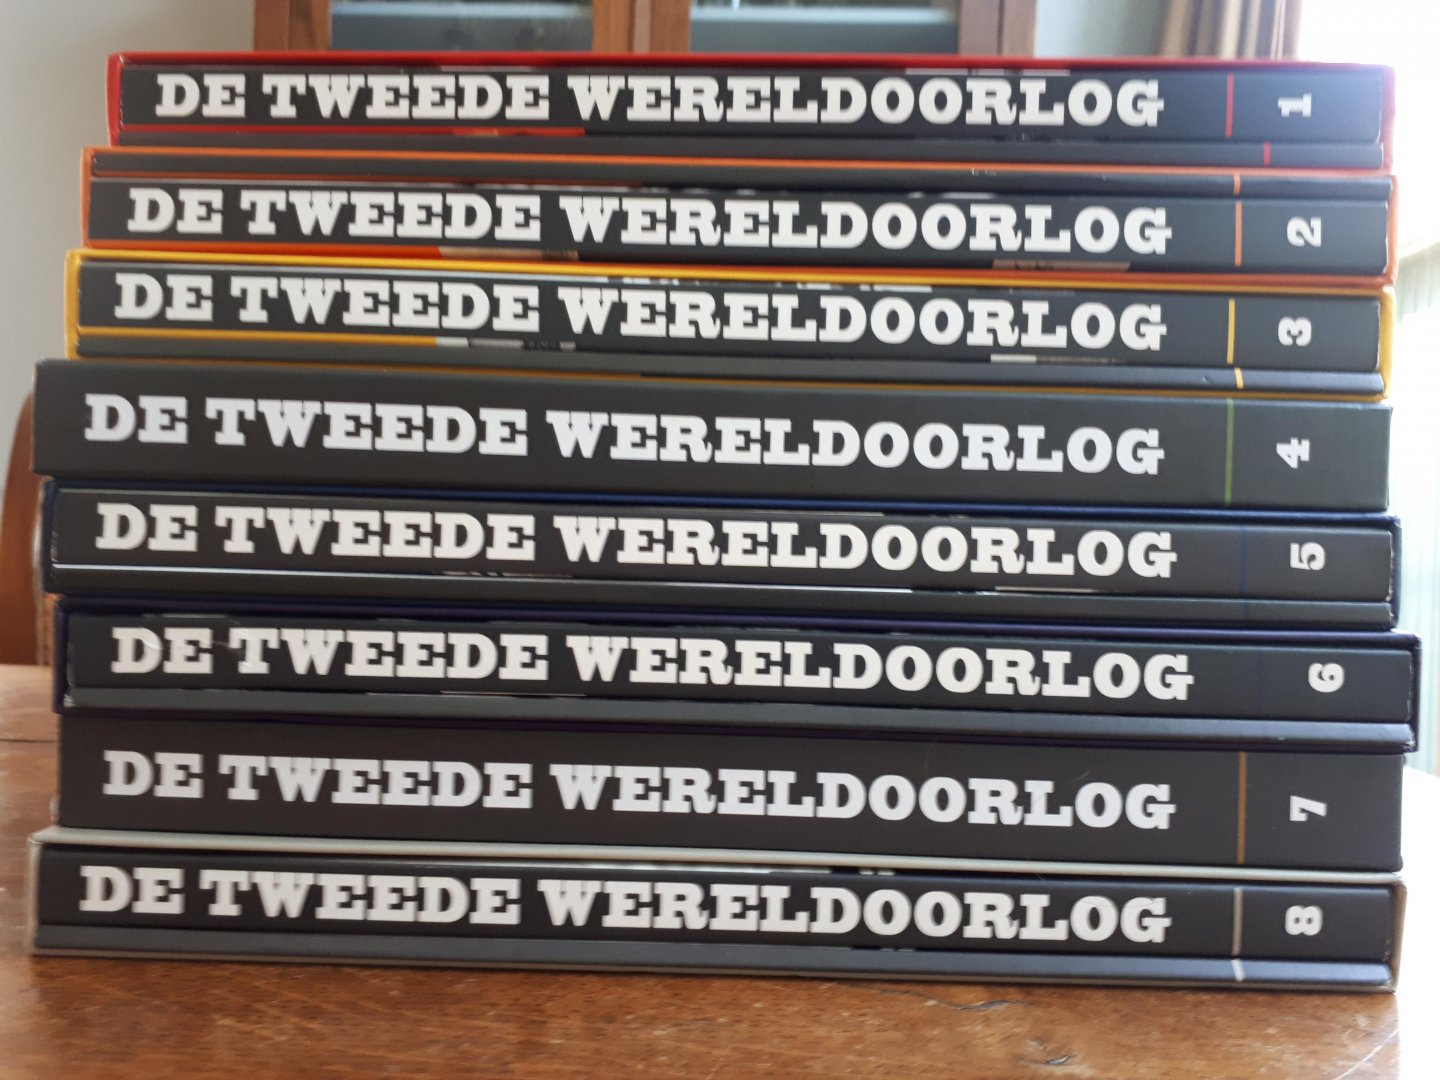 KIN, Bart - DE TWEEDE WERELDOORLOG IN WOORD EN BEELD. Complete set van 8 delen.